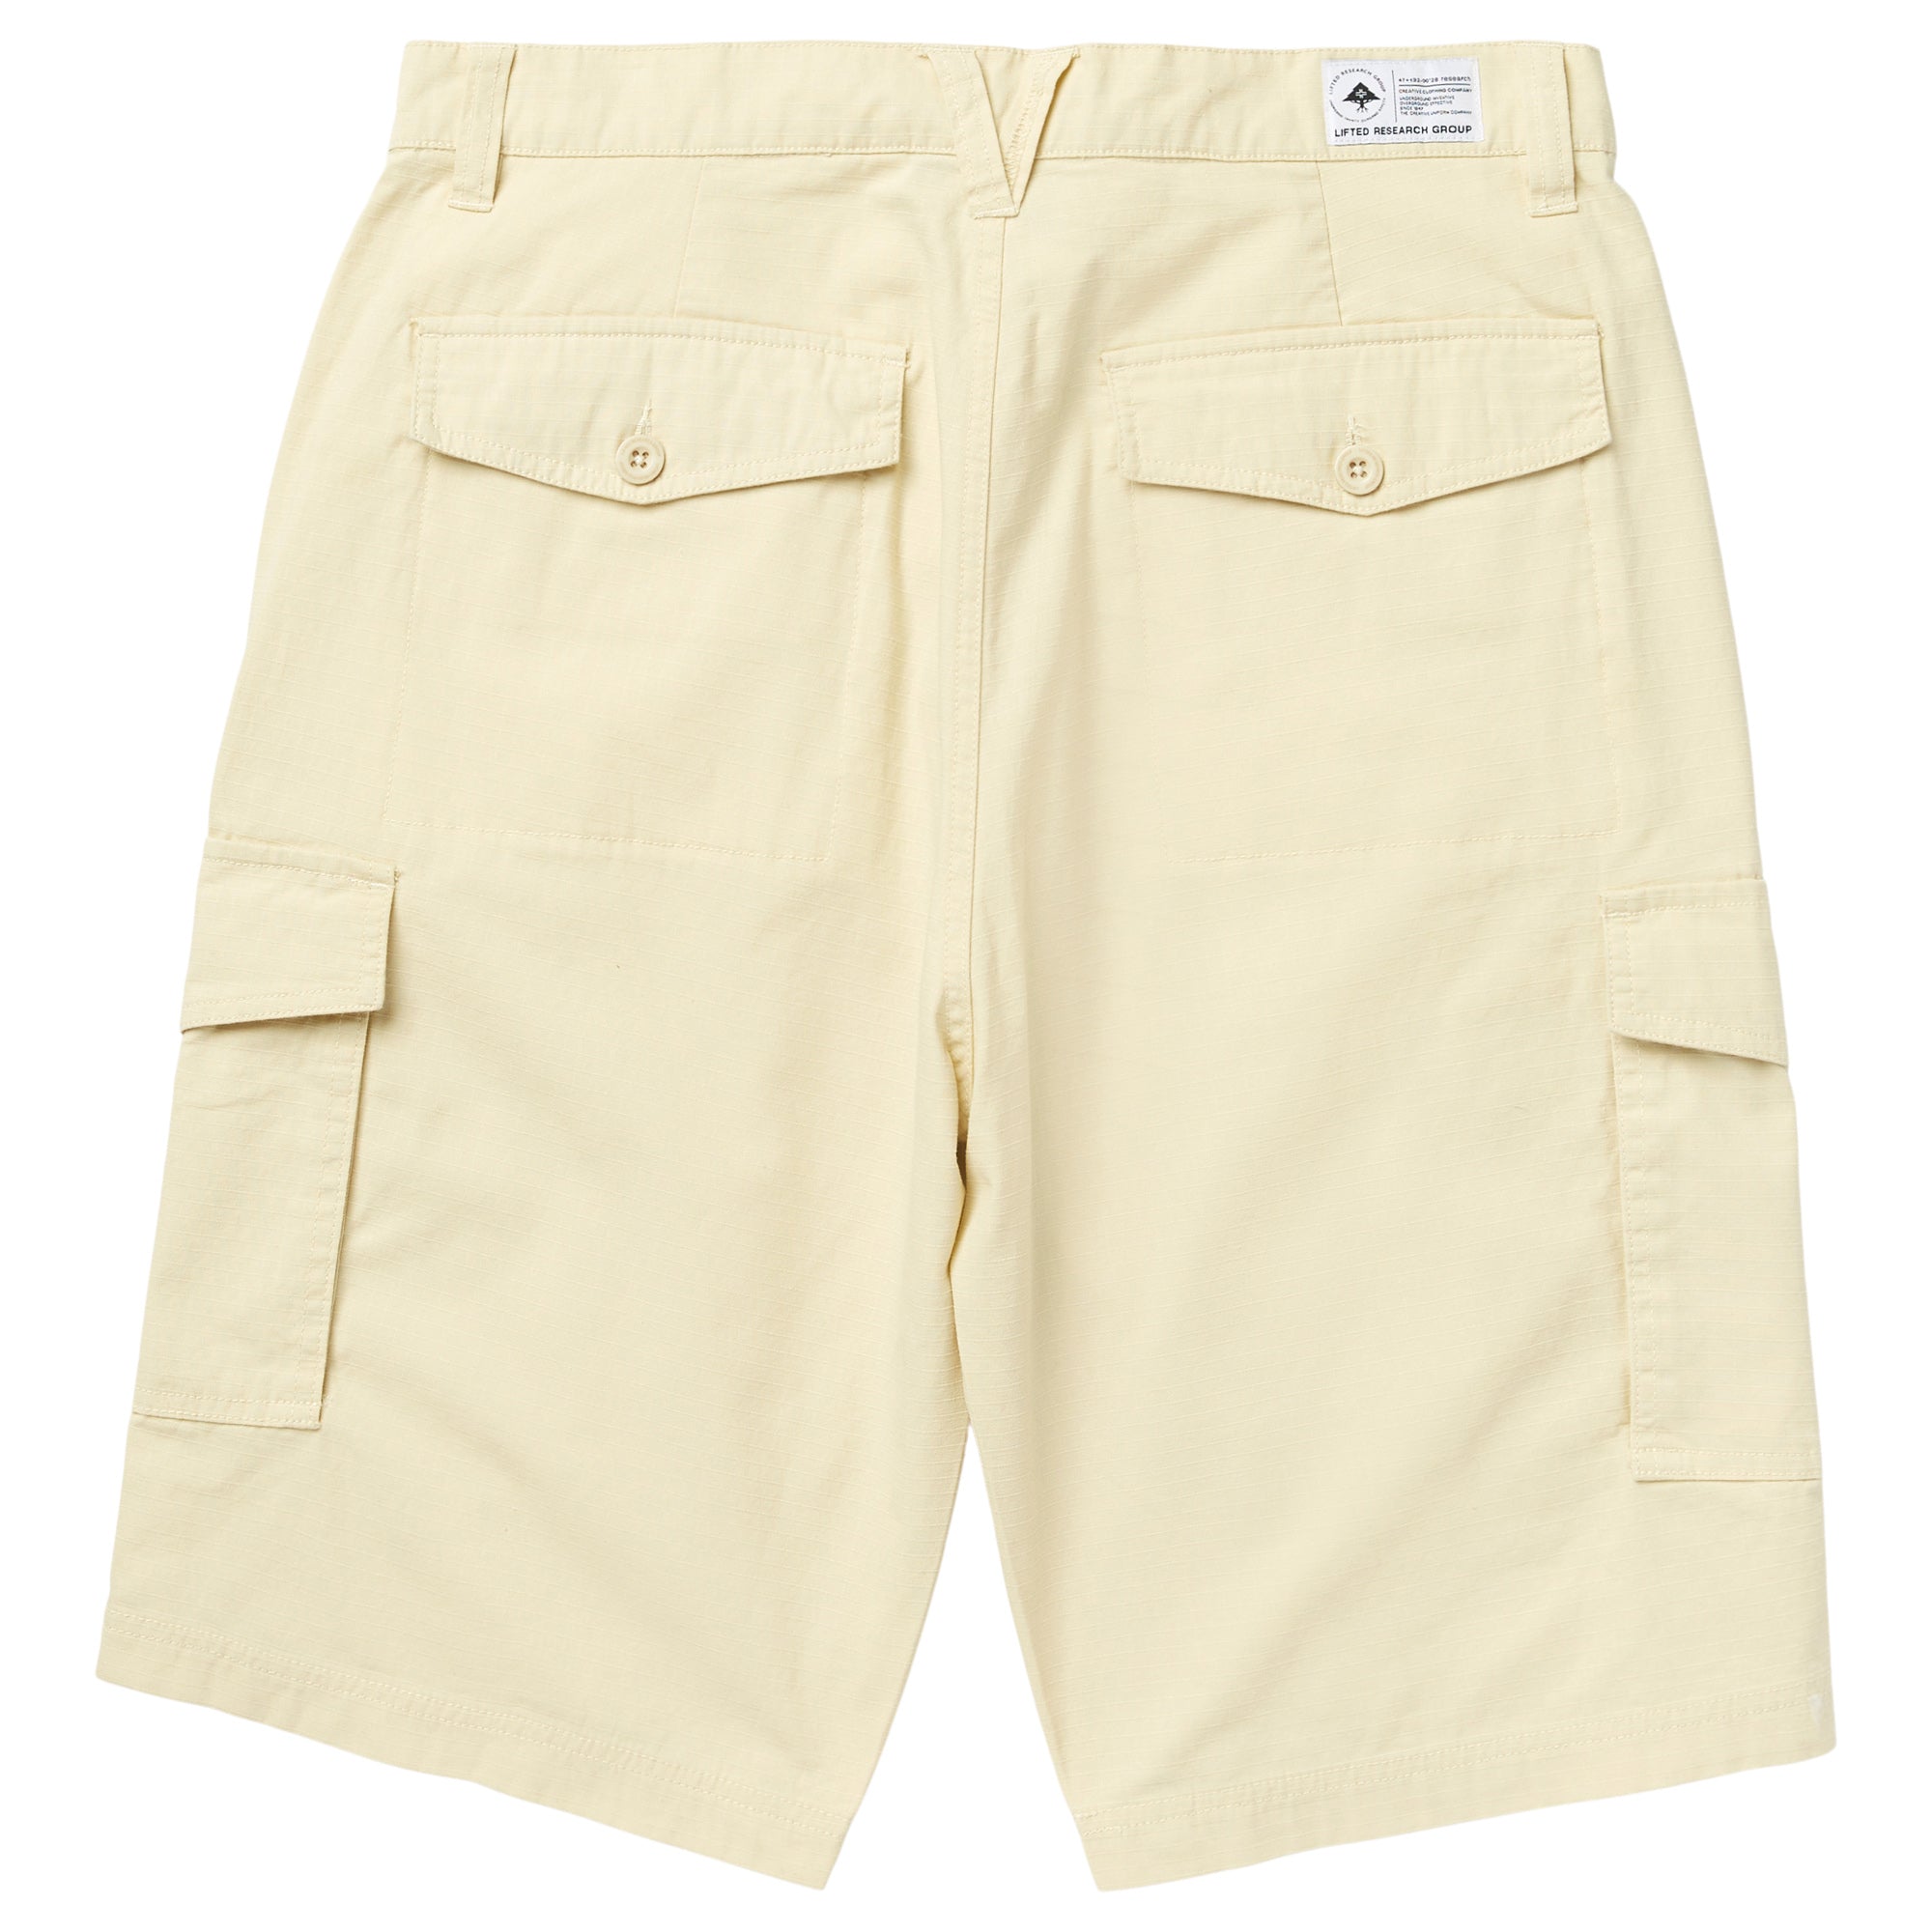 Summer 様 RRL Cargo Shorts Beige sz 31 8500円引き 